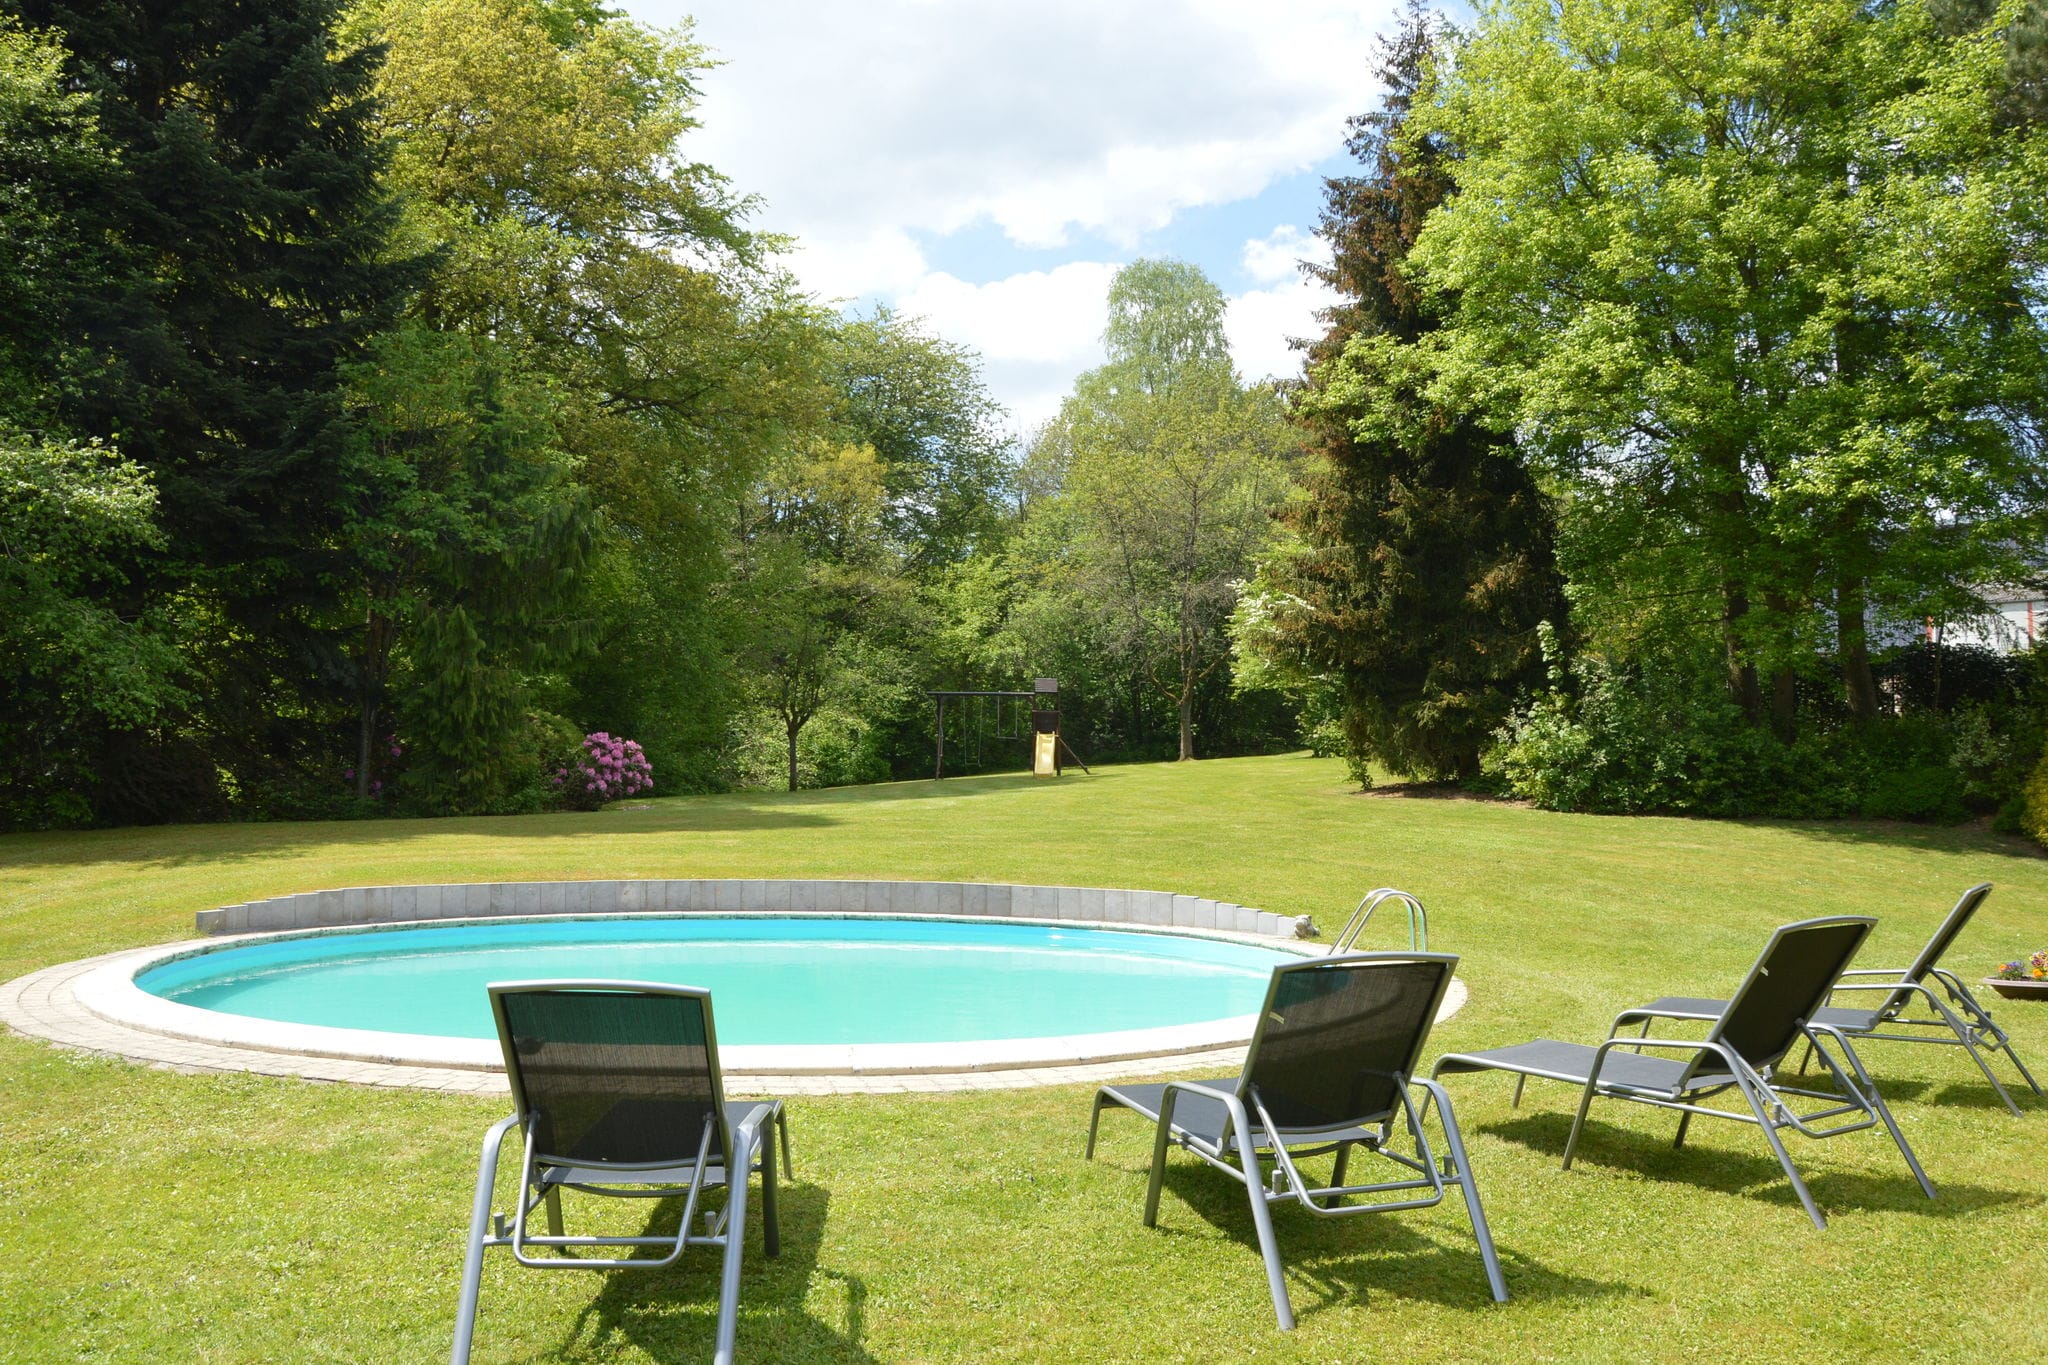 Zeer luxe villa met zwembad (half mei t/m half sep), vlak bij het F1 circuit